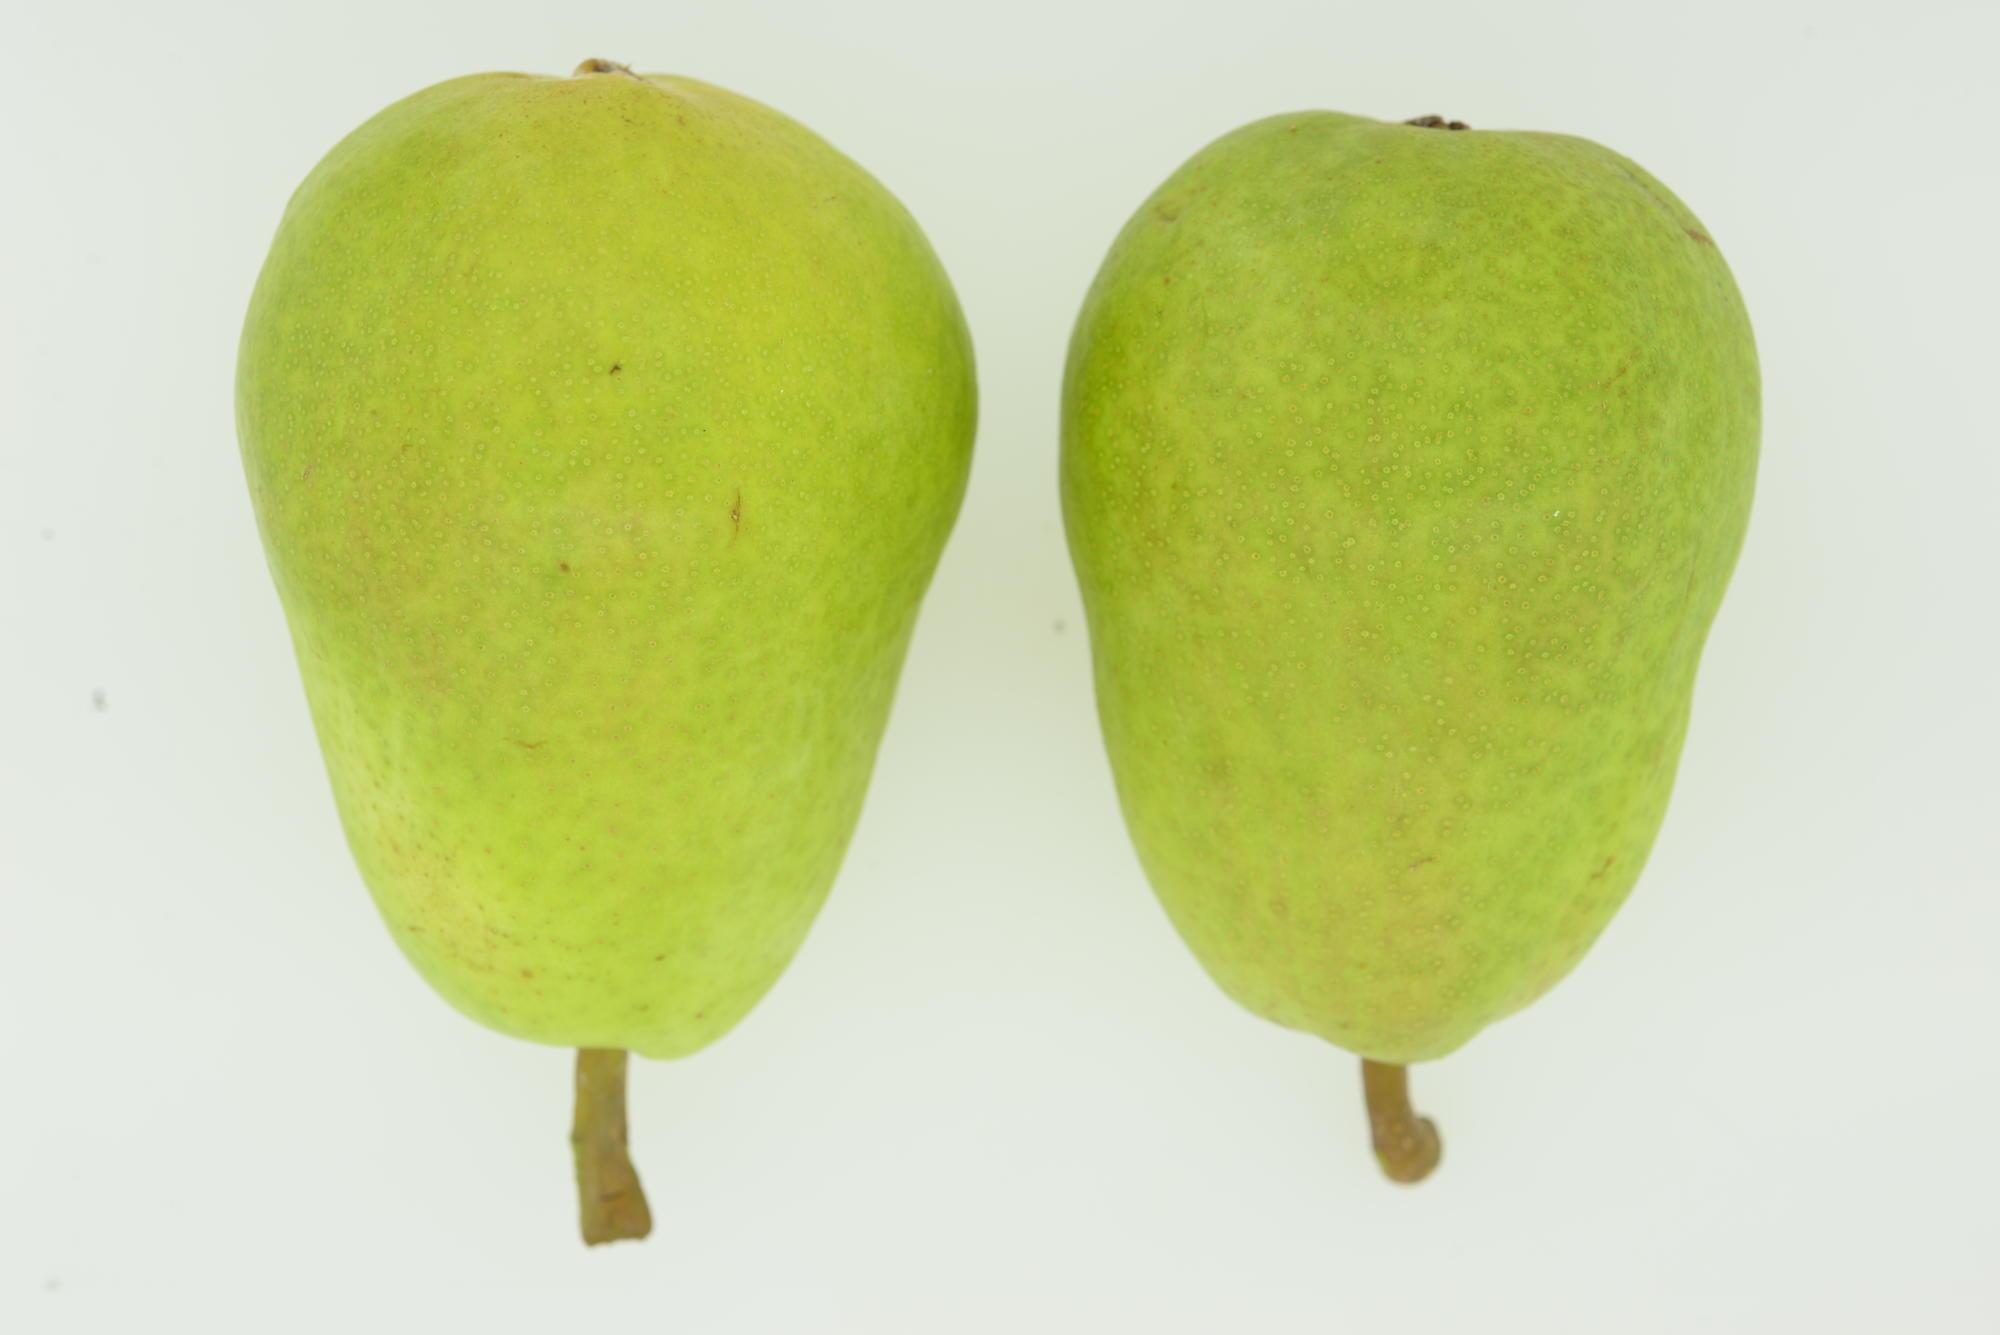 unripe green pears